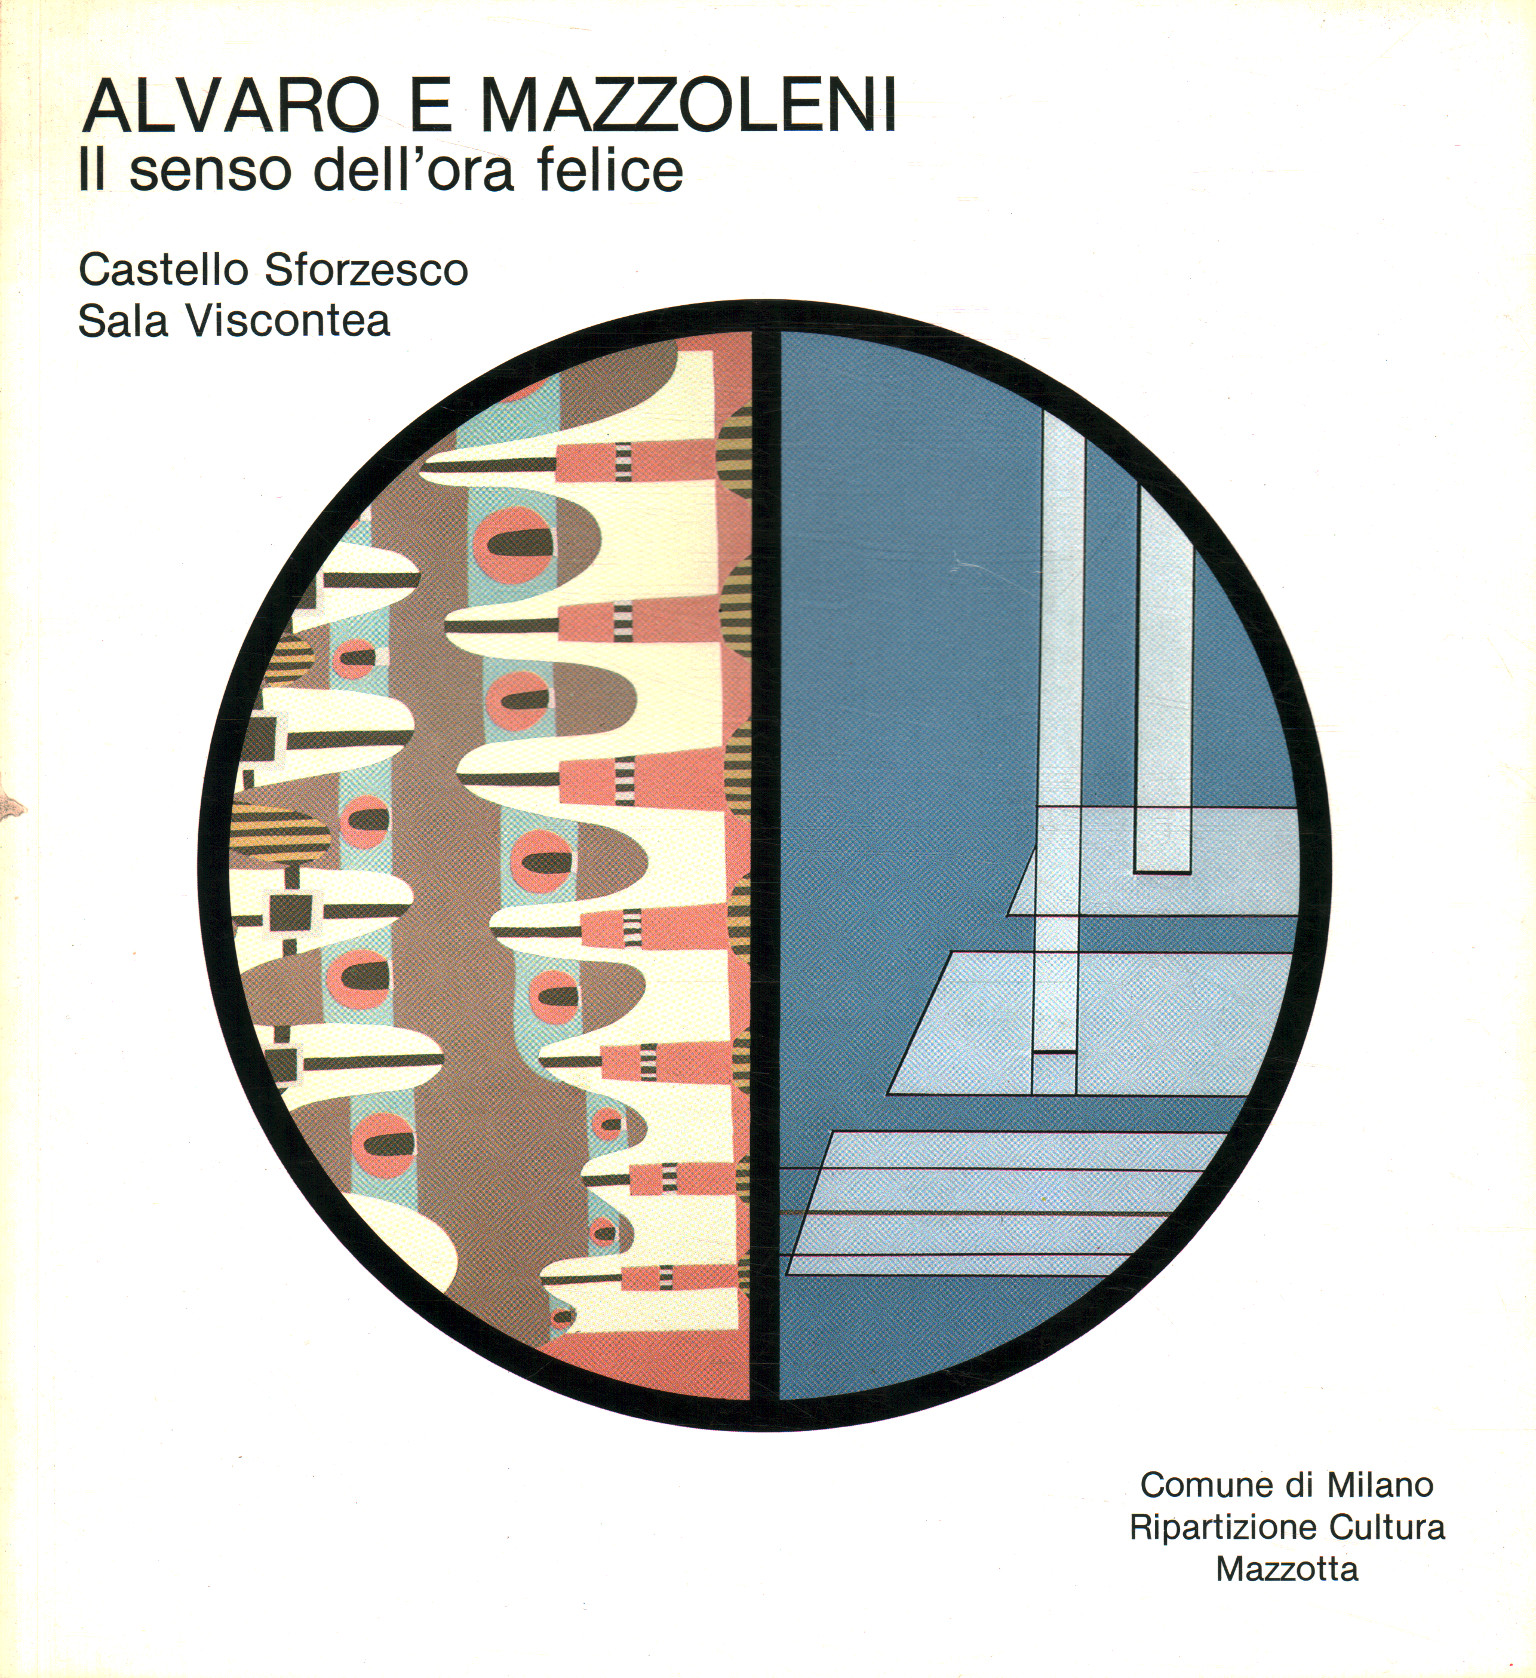 Alvaro and Mazzoleni